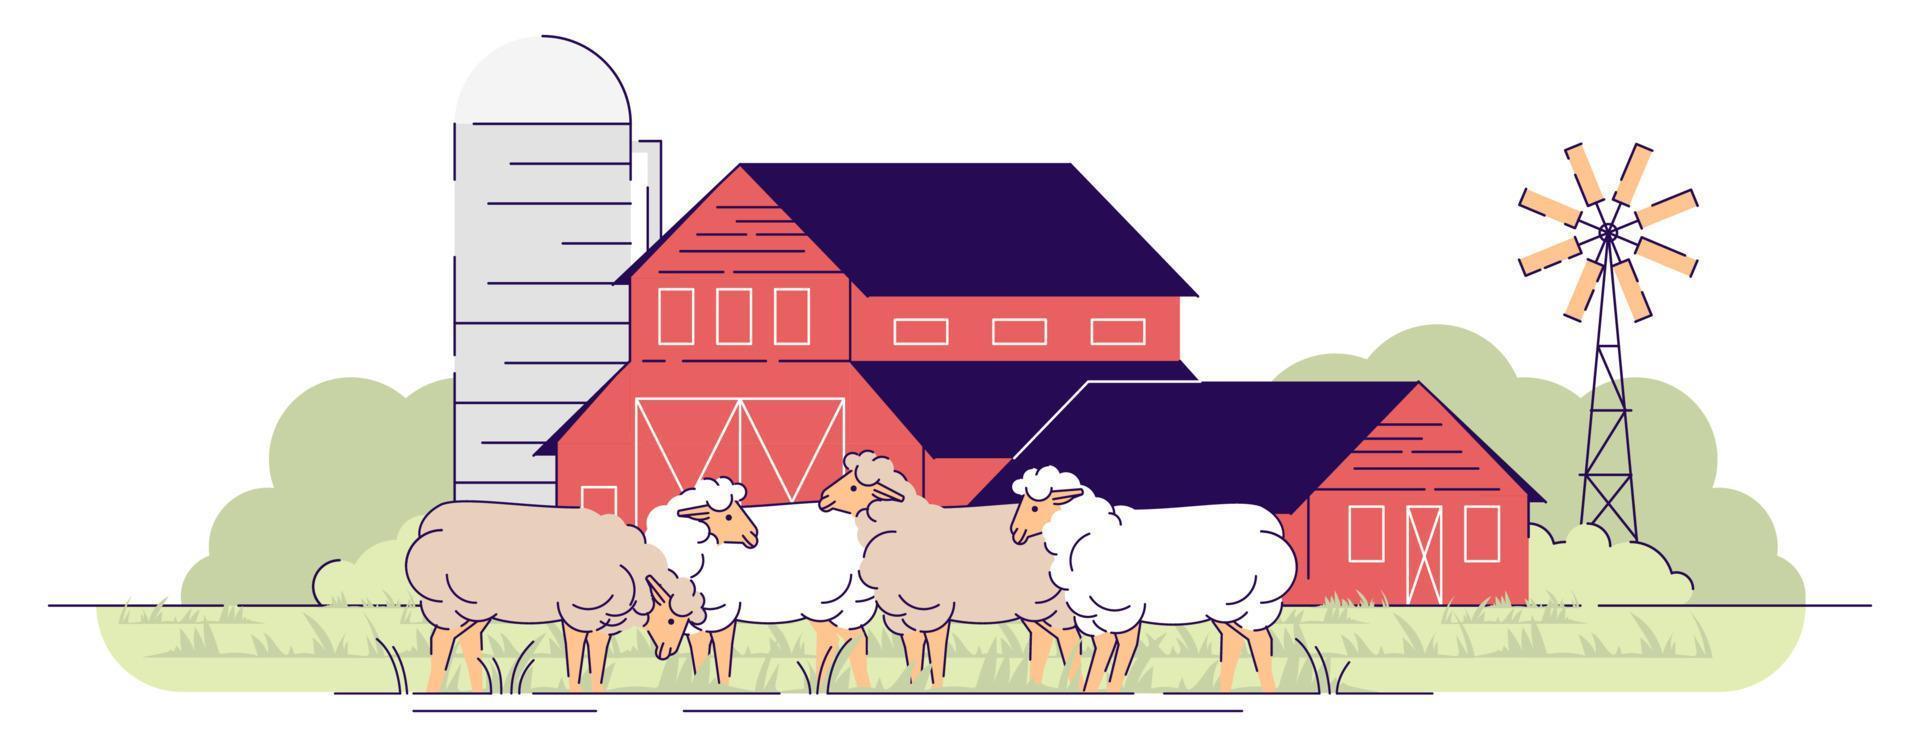 illustrazione vettoriale piatta di allevamento di pecore. allevamento, concetto di cartone animato di zootecnia. pecore al pascolo sui pascoli dell'aia. terreno agricolo del villaggio con aia, ranch rurale. fienili rossi in legno edifici